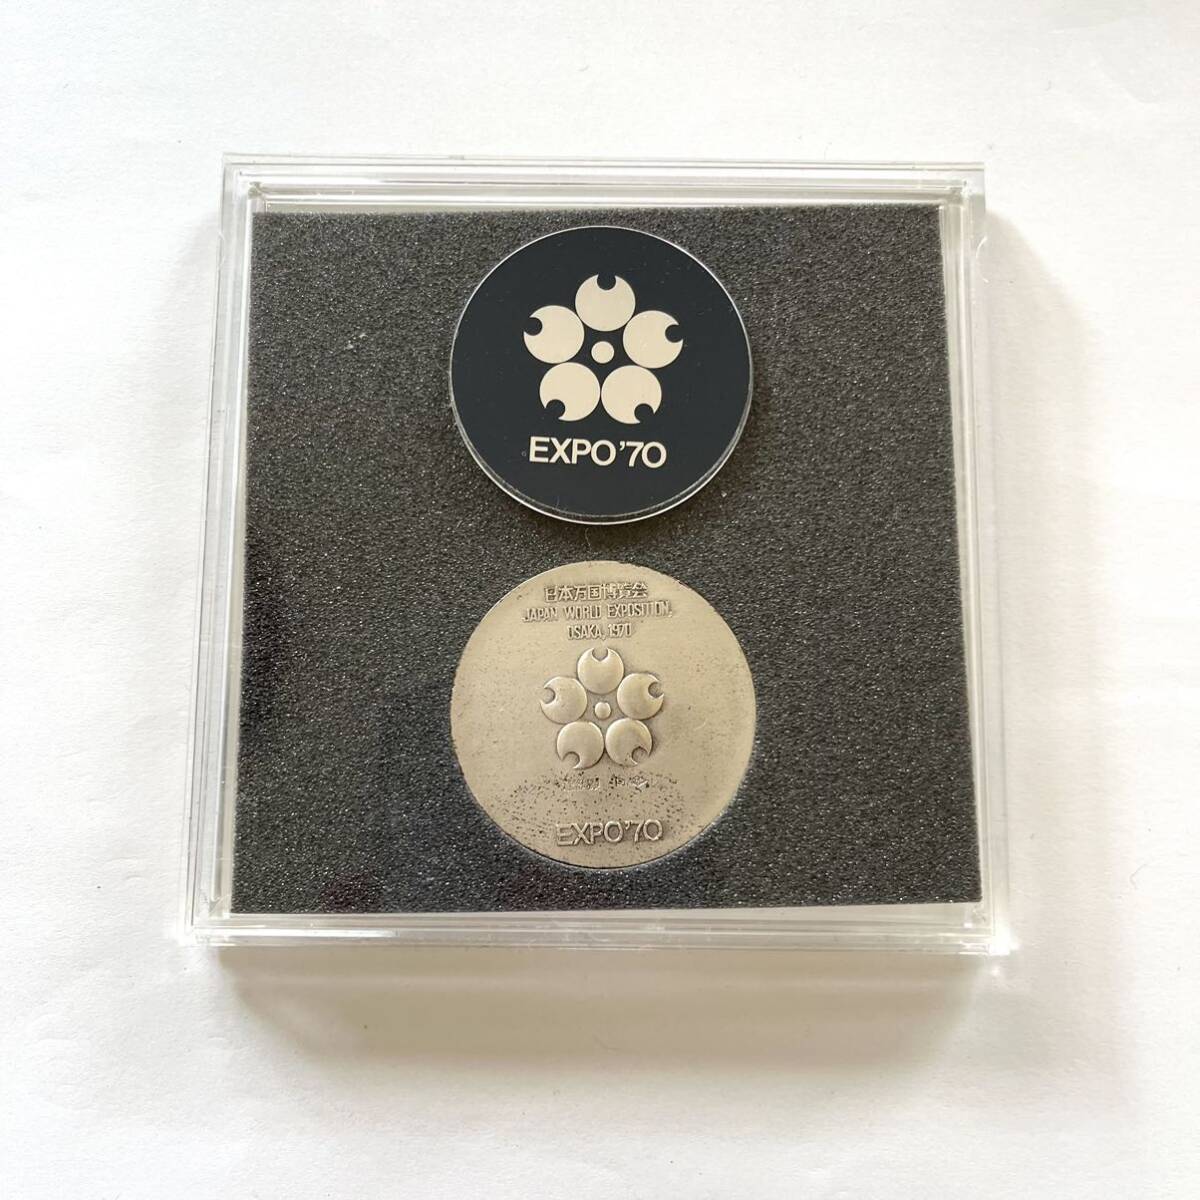 【銀 日本万国博覧会記念メダル 2個セット】MEDAL EXPO'70 SILVER MEDAL 925/1000 銀メダル 大蔵省造幣局製の画像7